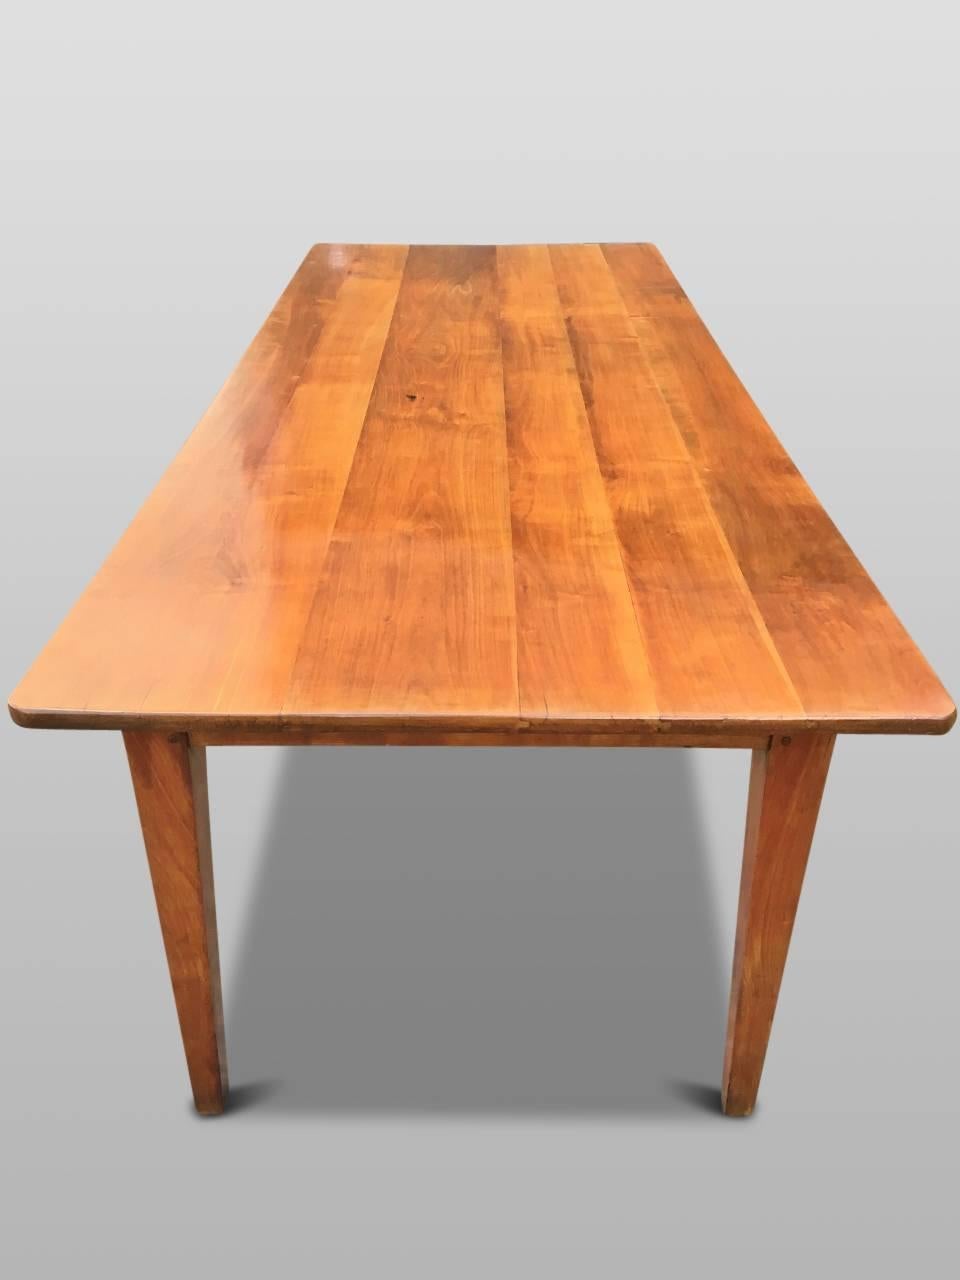 cherry wood farm table